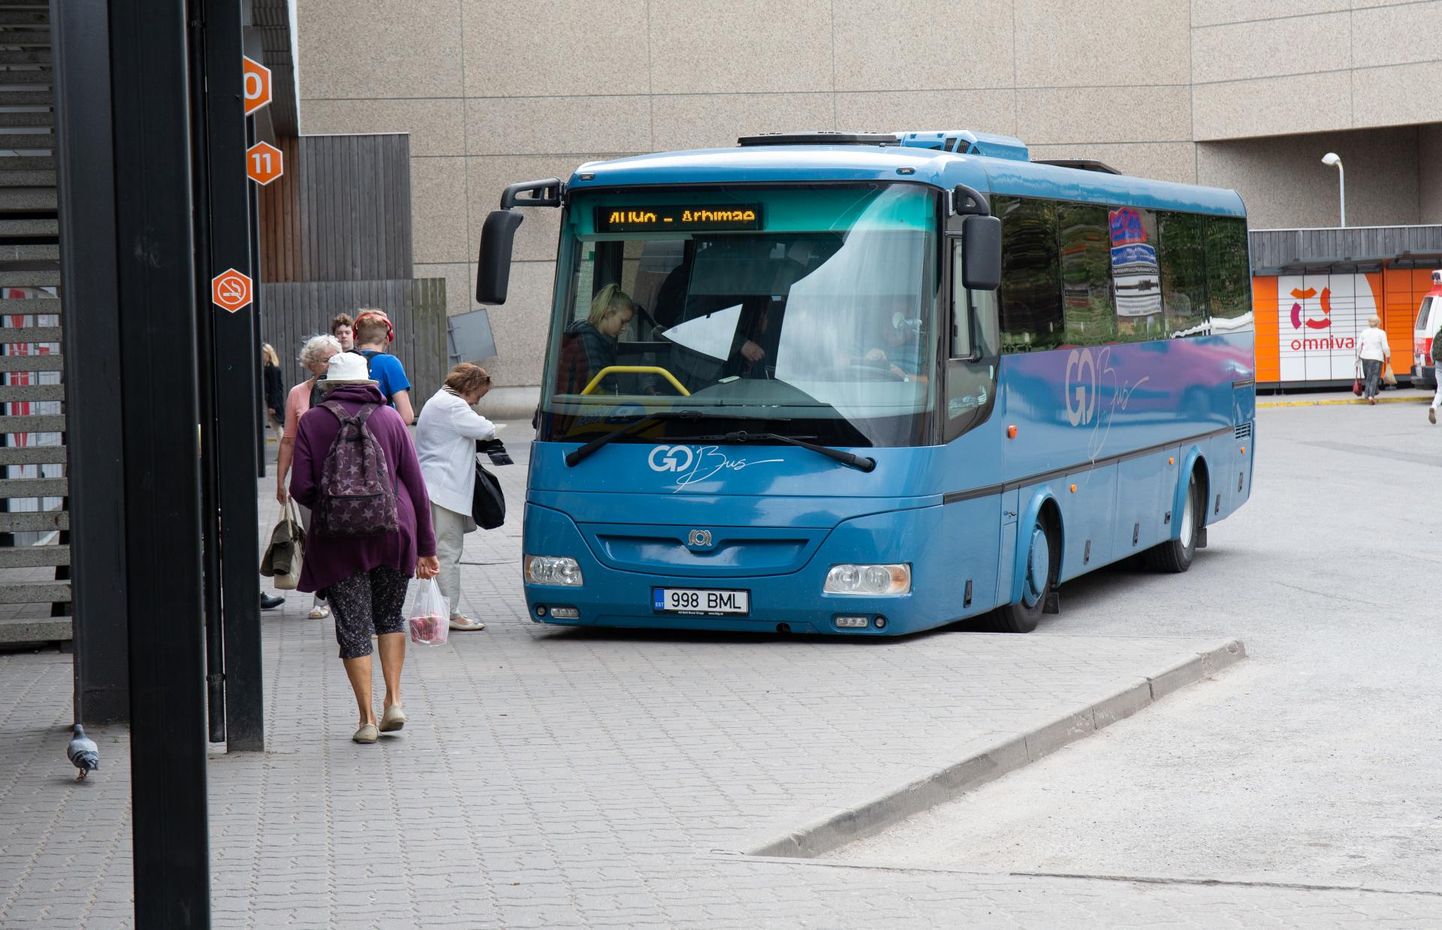 Tartumaal hakkavad tasuta reisijaid vedama Go Busi sinised bussid. Seda, kas need tasuta on, saab välja lugeda busside tabloodelt.